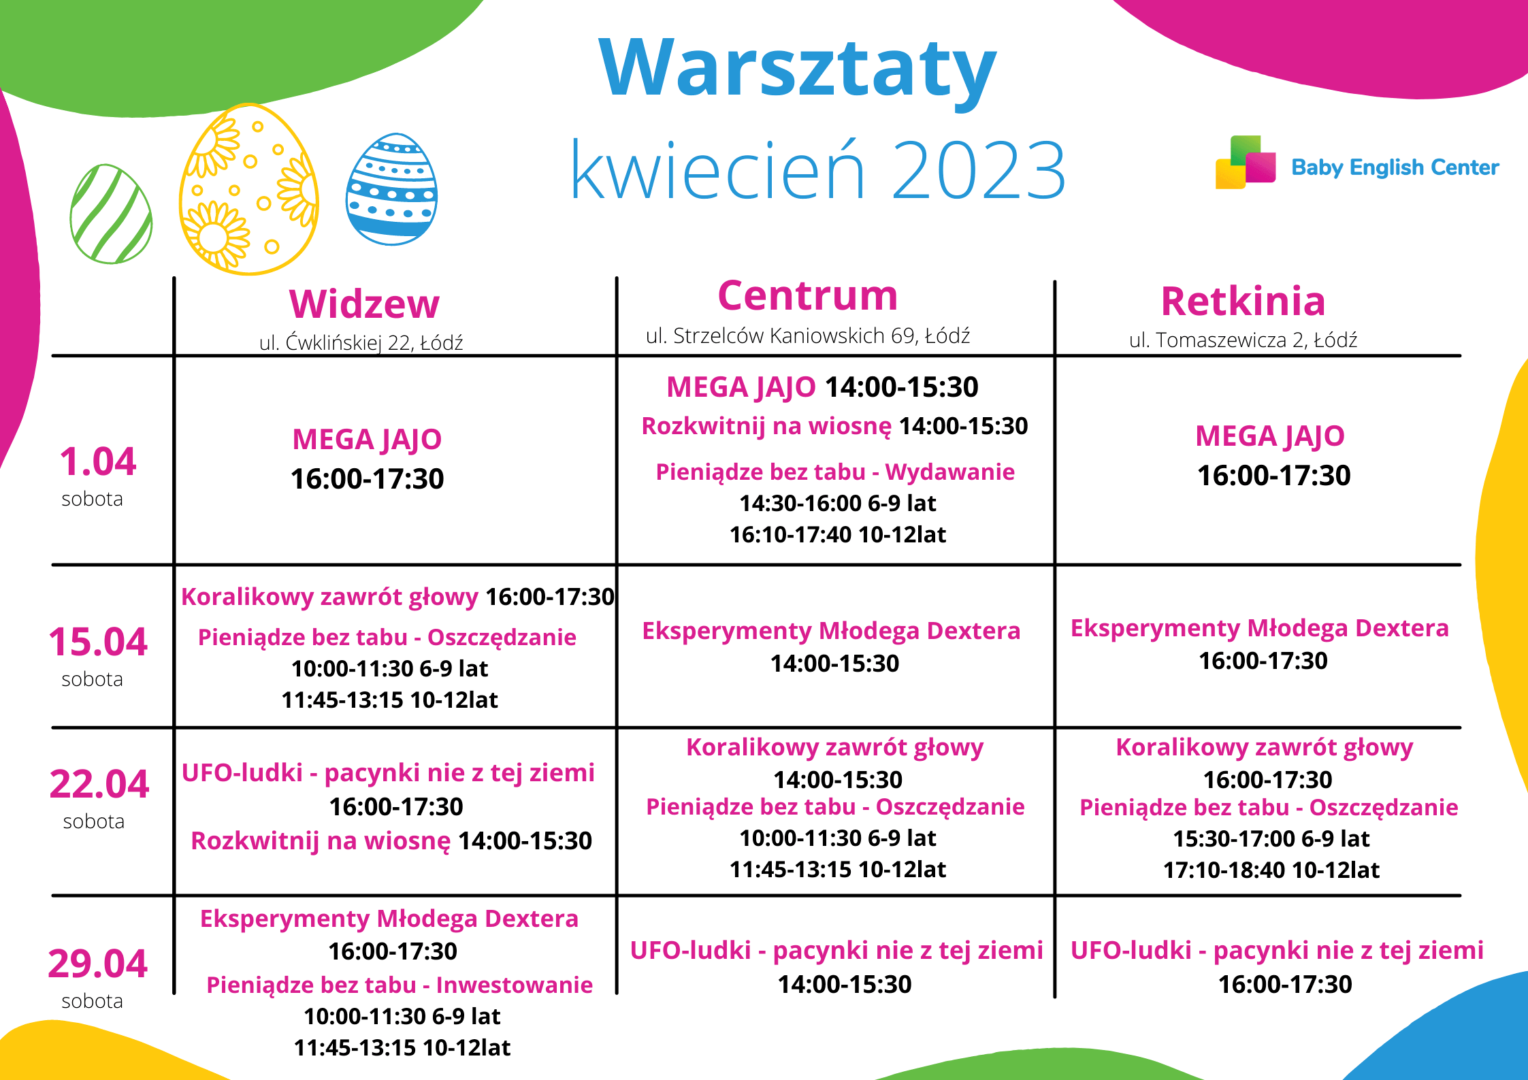 You are currently viewing Warsztaty dla dzieci – Akademia BEC – Kwiecień 2023